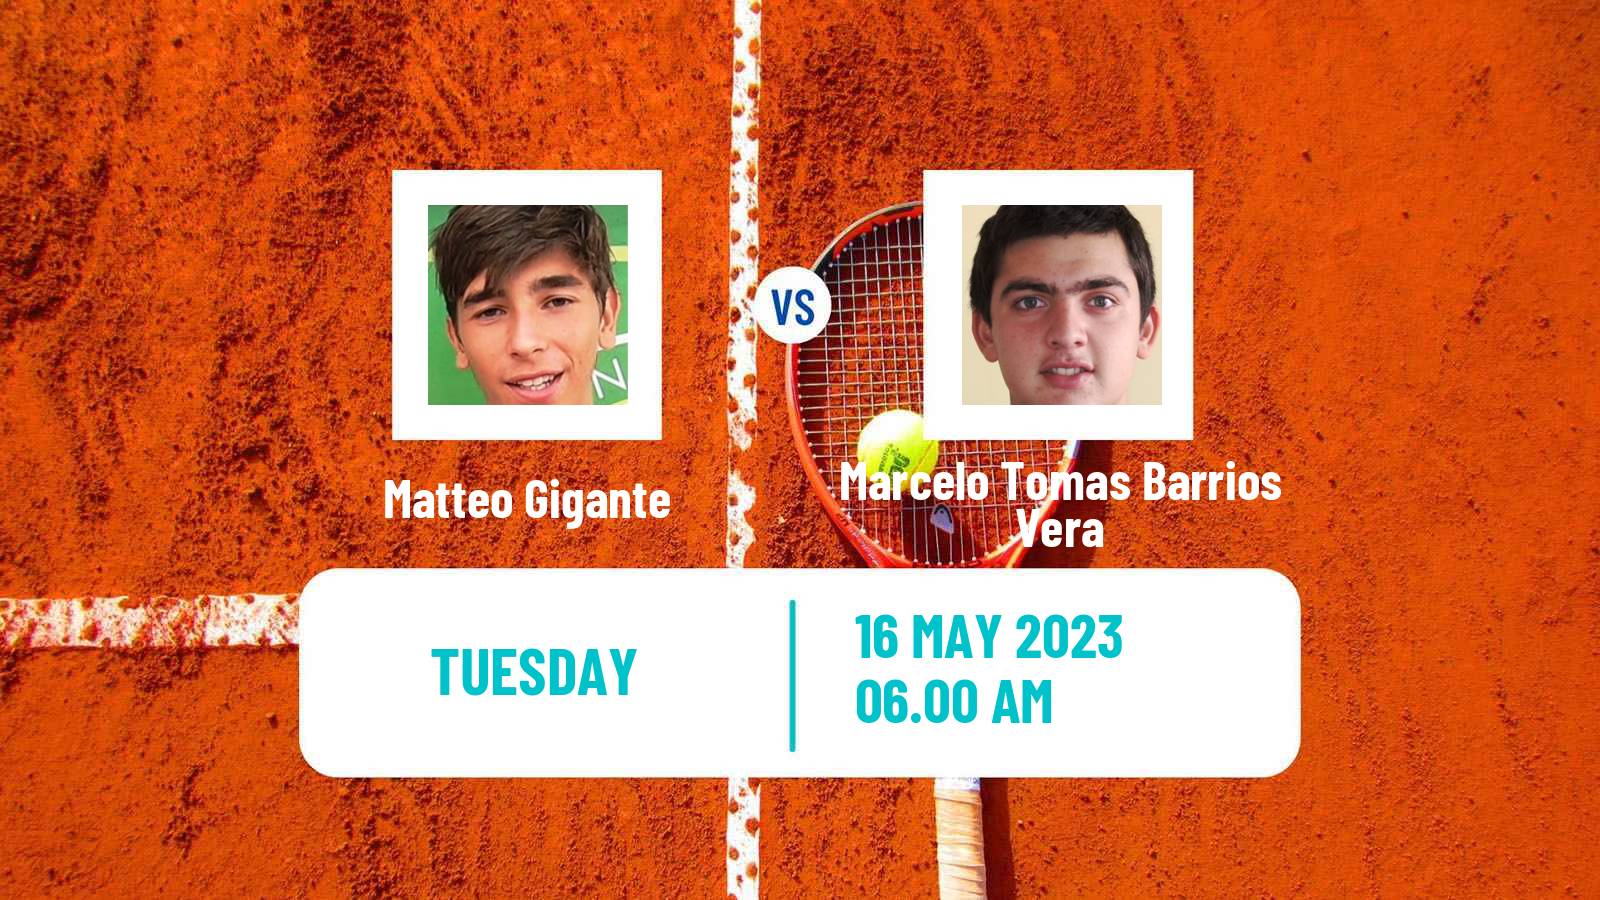 Tennis Tunis Challenger Men Matteo Gigante - Marcelo Tomas Barrios Vera